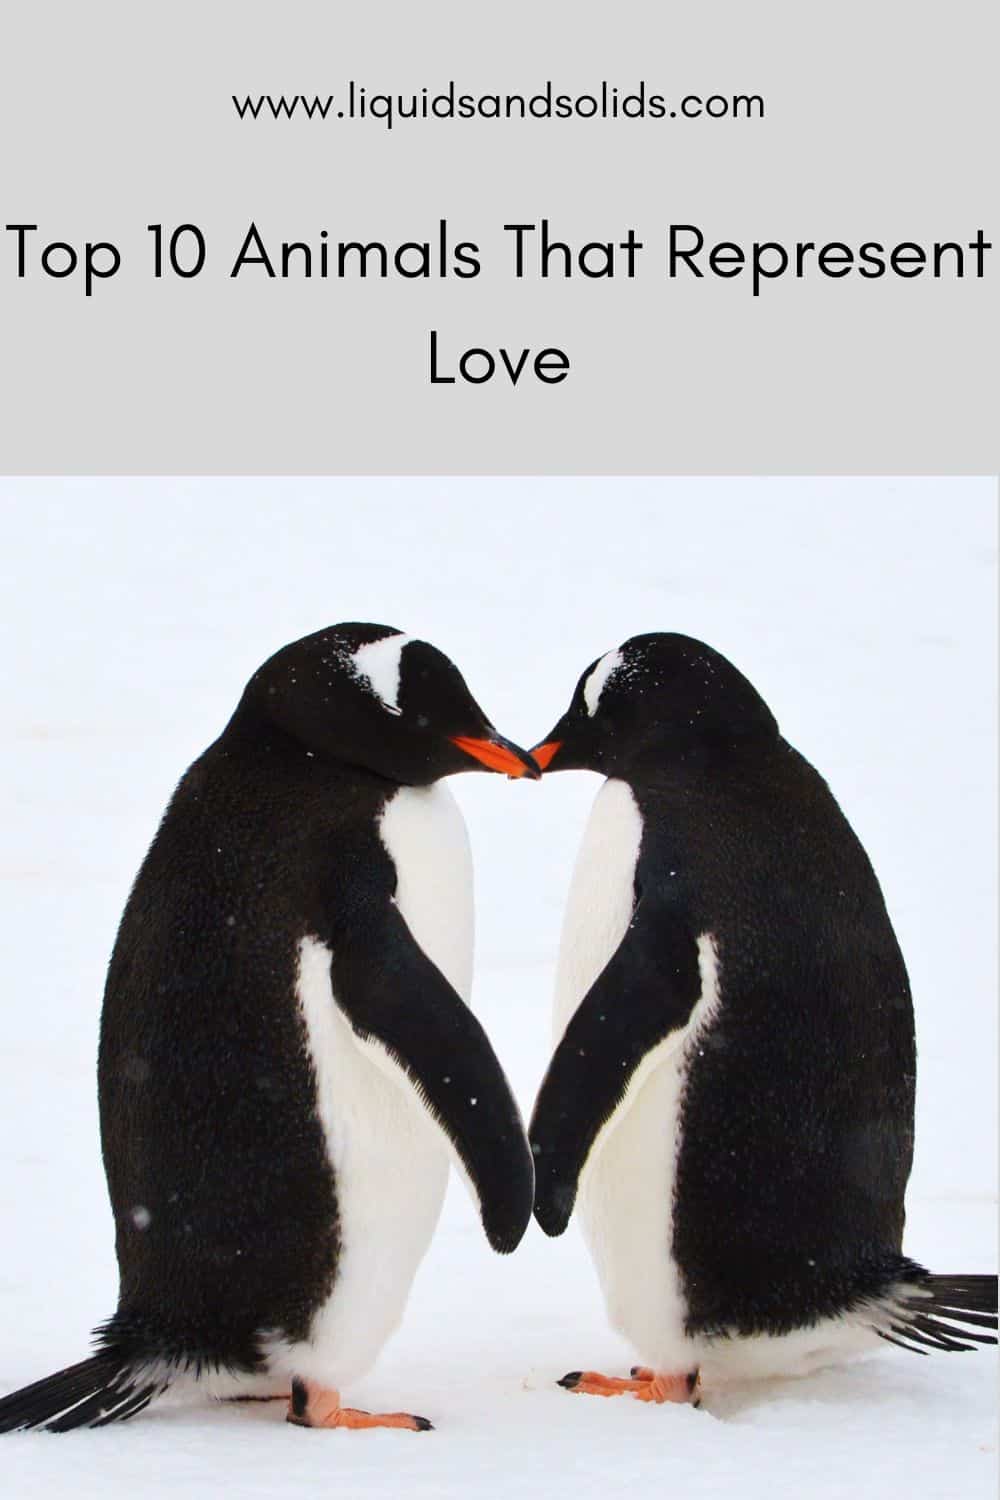  Top 10 Dyr, der repræsenterer kærlighed